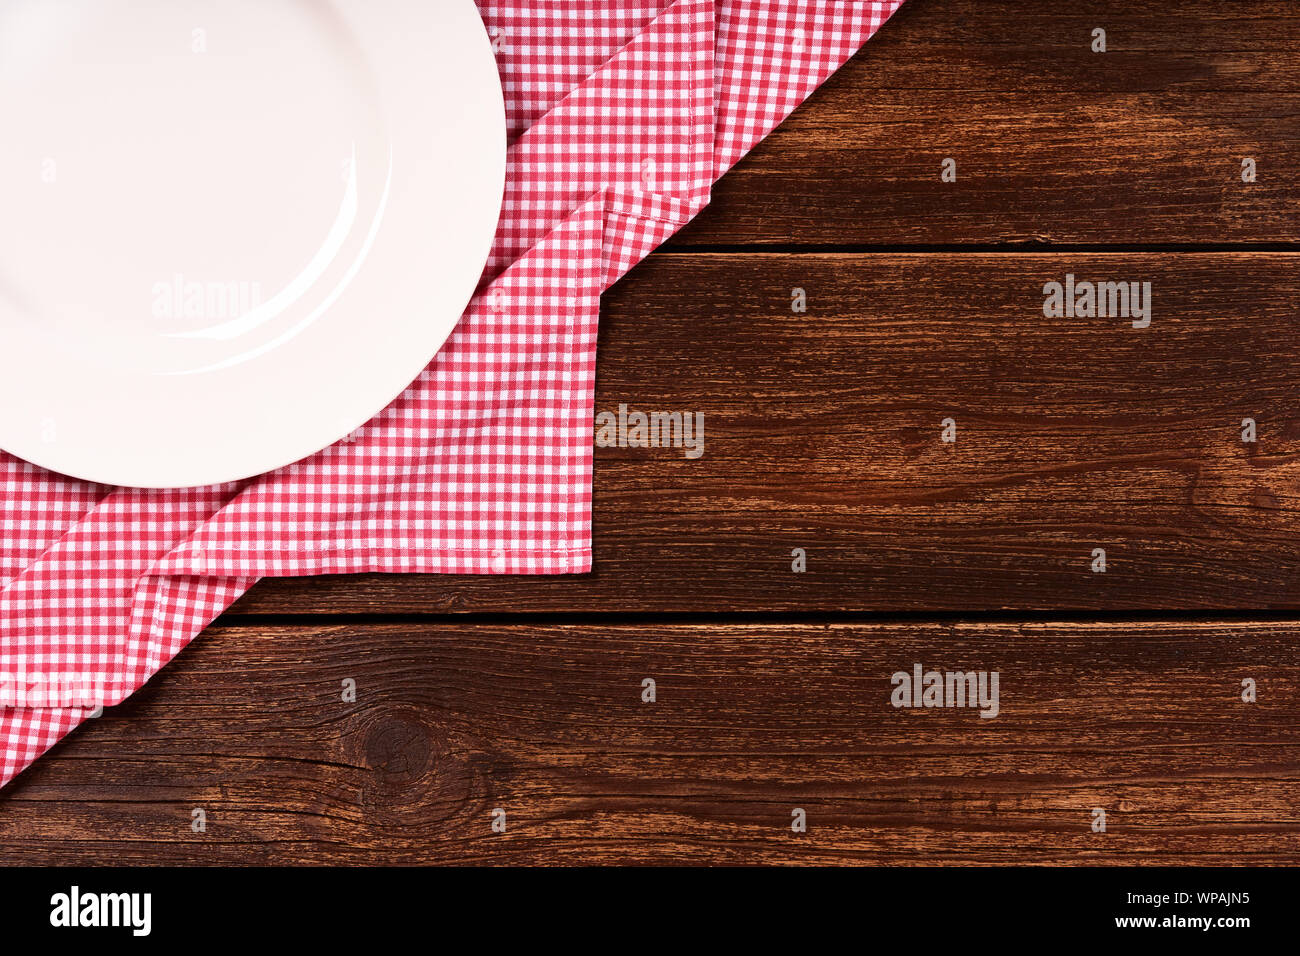 Sentar plana de madera antigua con fondo rojo a cuadros trapo de cocina, placa blanca redonda y espacio para el texto. Foto de stock